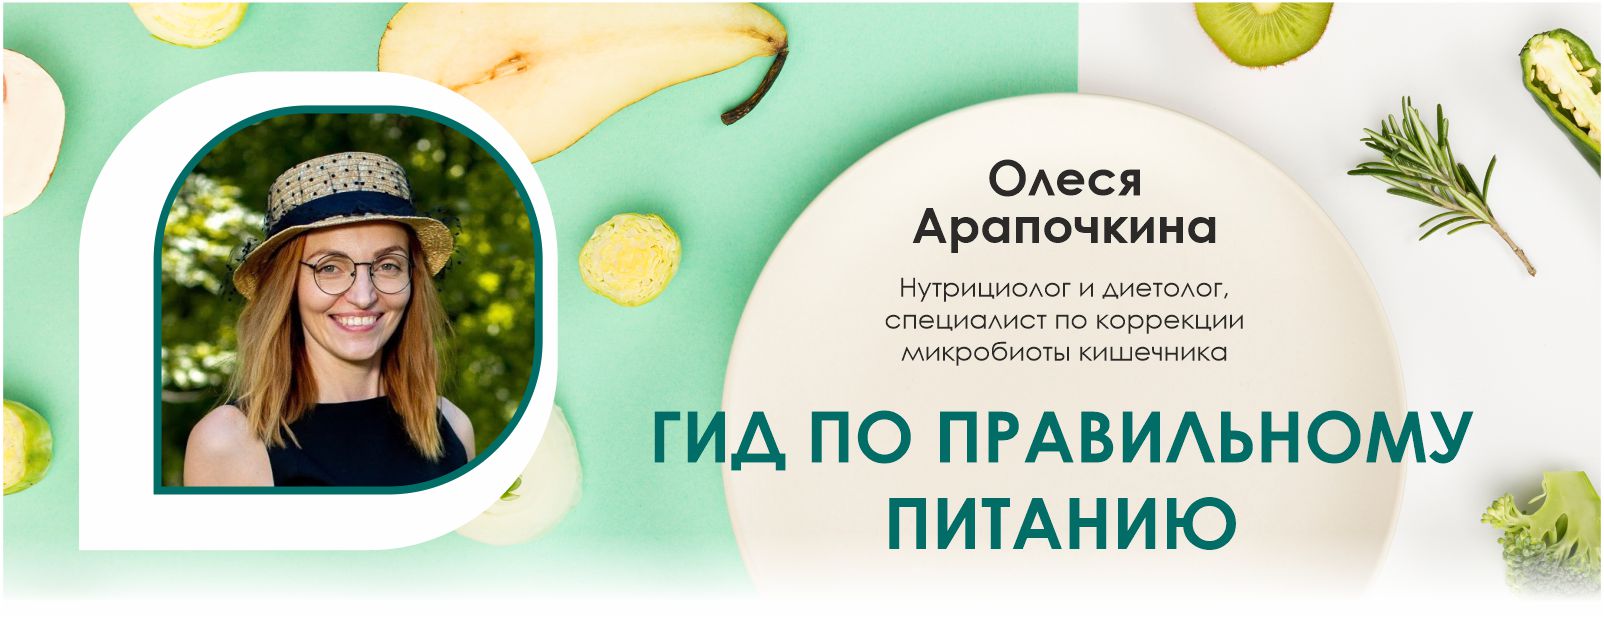 Вебинар компании Fucoidan World «Гид по правильному питанию», ведущая Олеся Арапочкина.